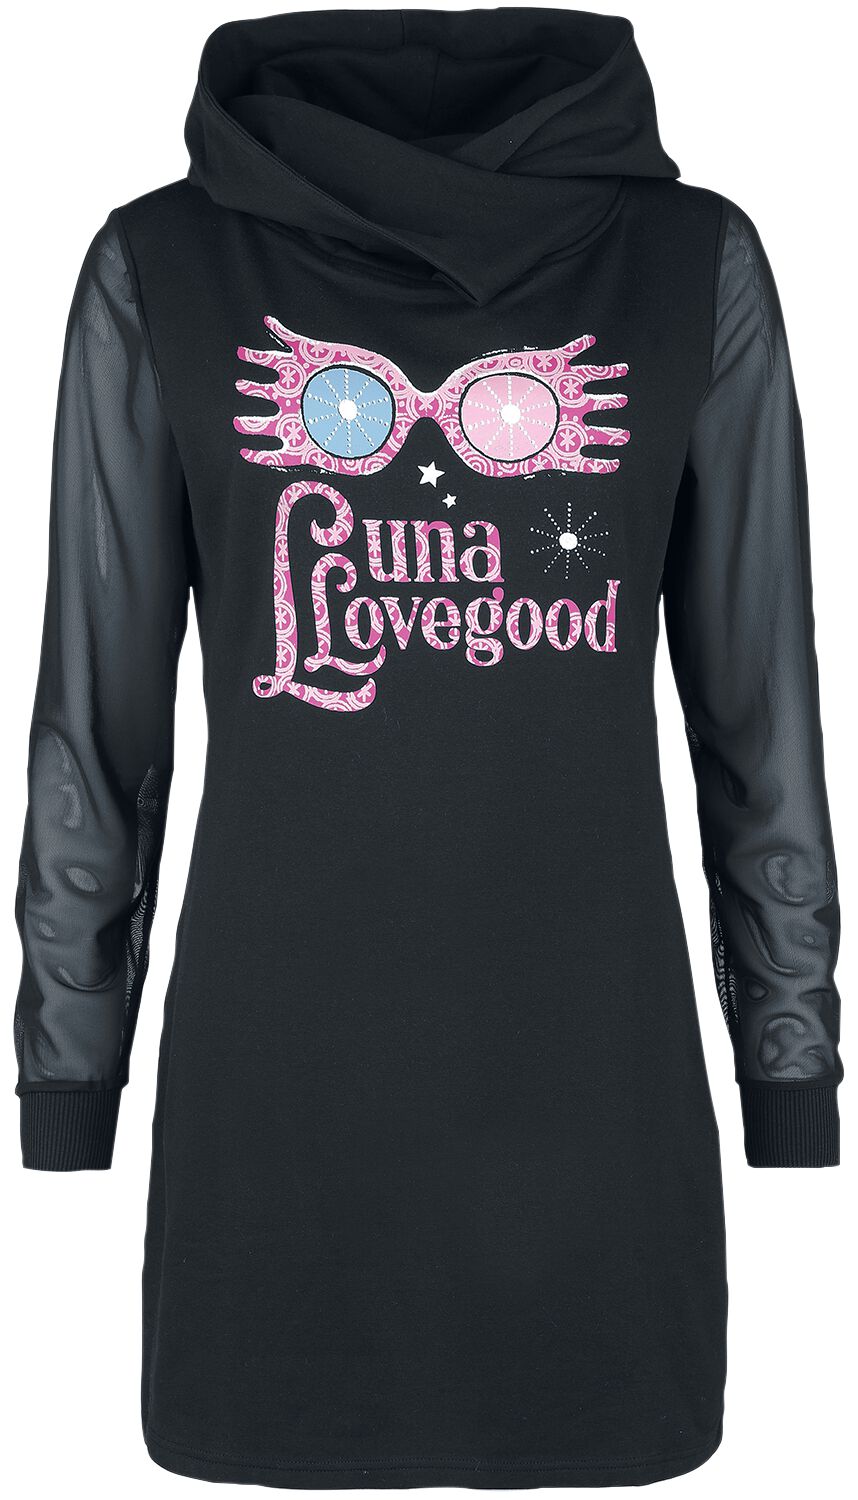 Harry Potter Kleid knielang - Luna Lovegood - M - für Damen - Größe M - schwarz  - EMP exklusives Merchandise!